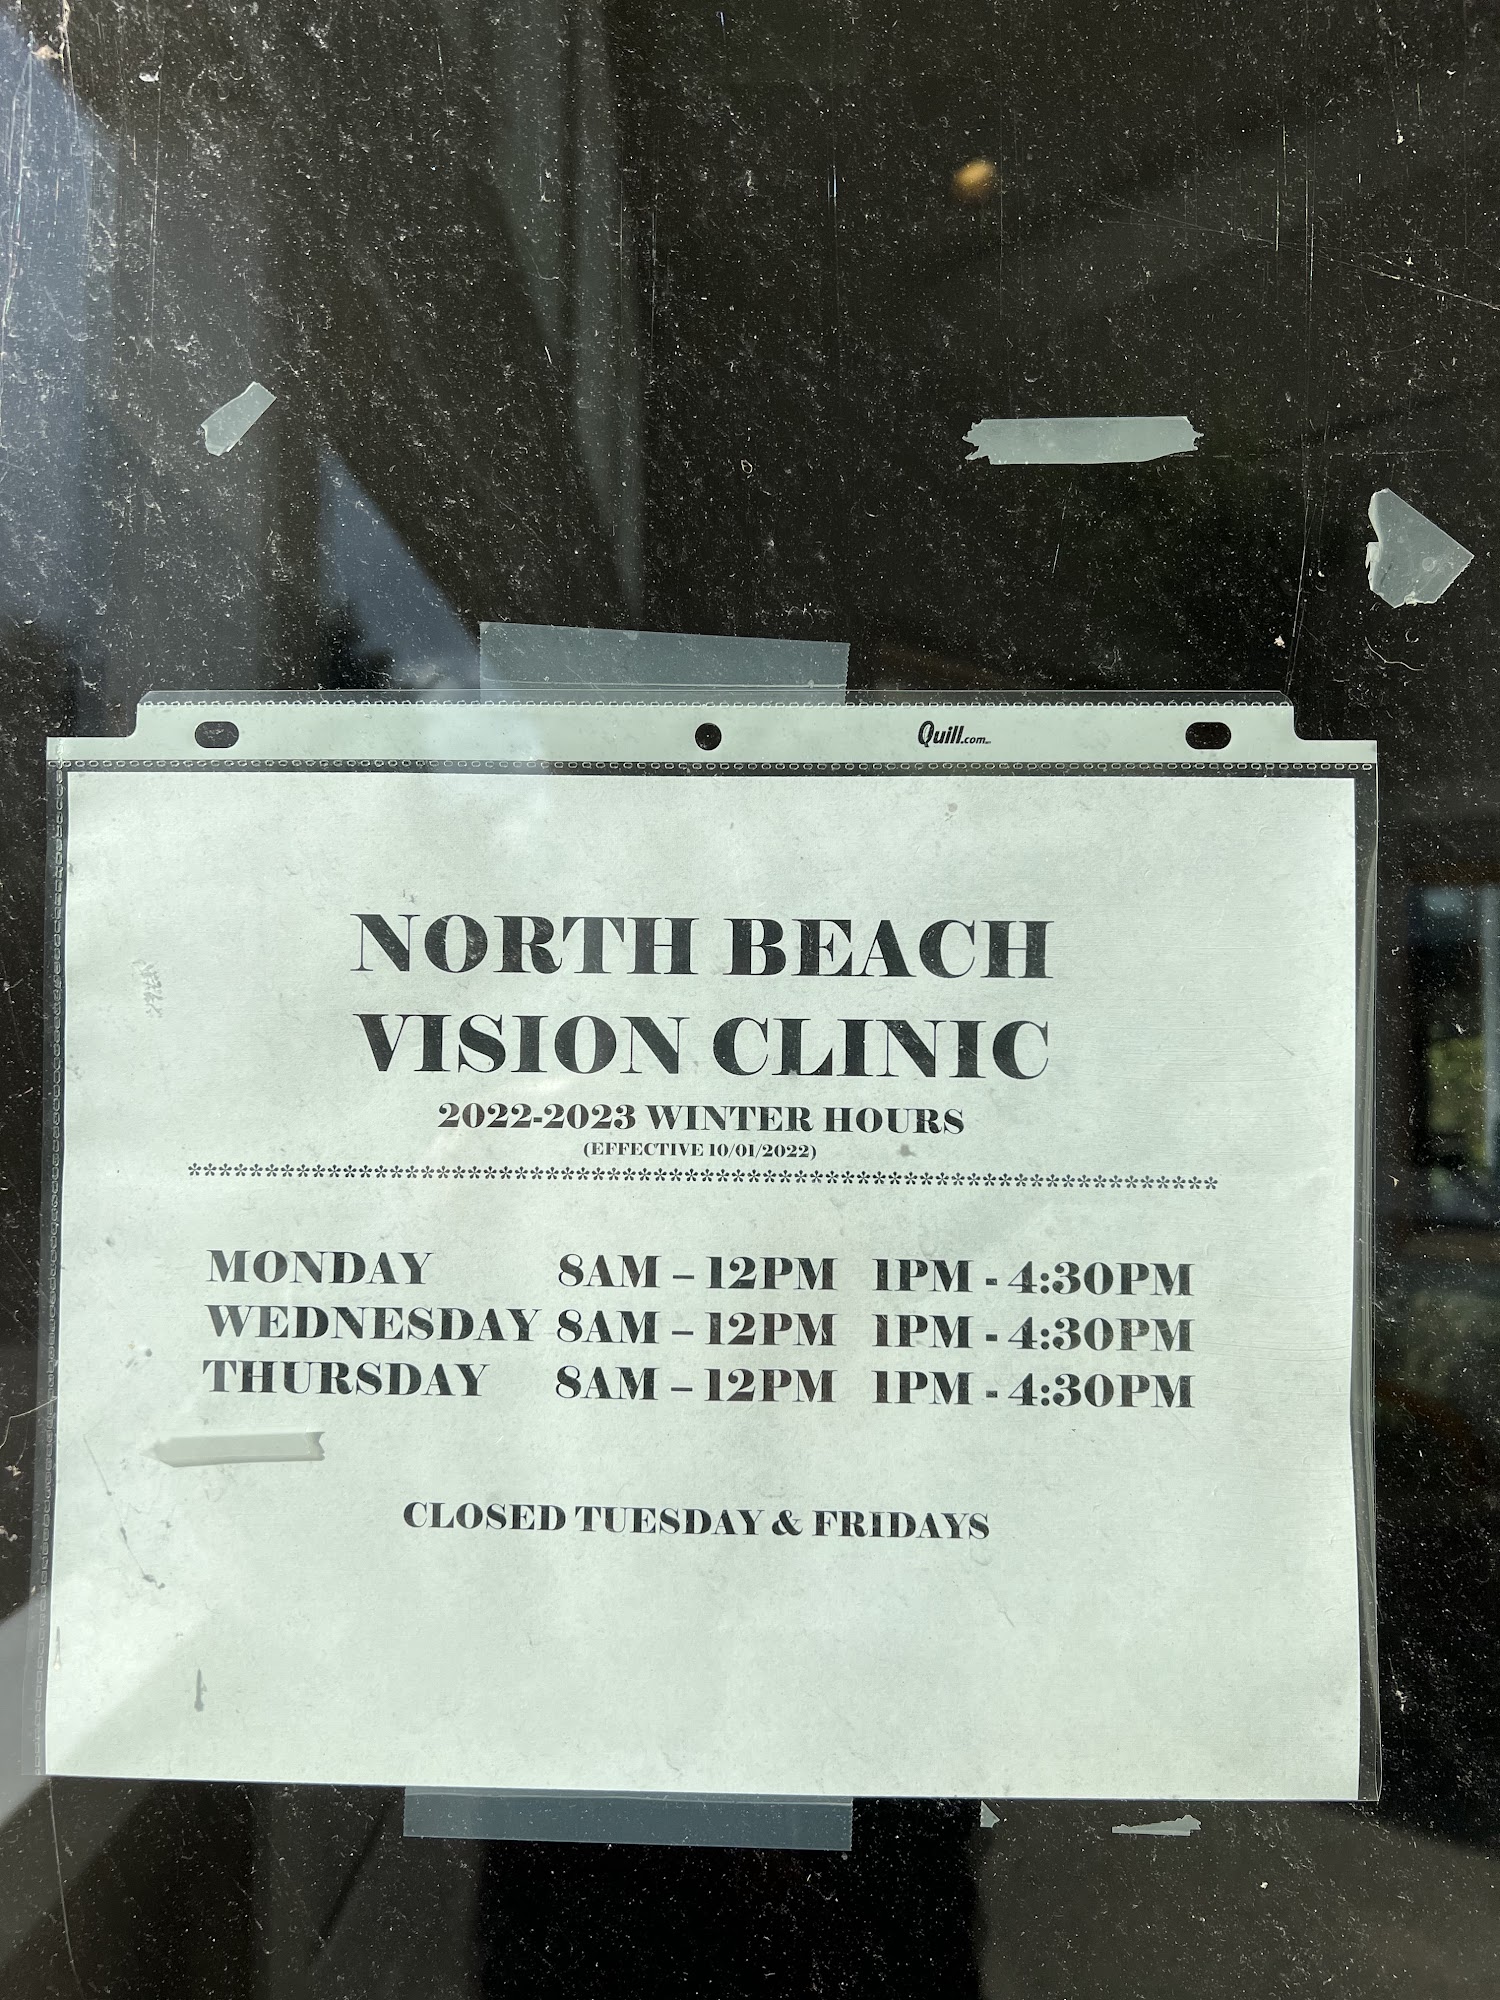 North Beach Vision Clinic 848 Ocean Shores Blvd NW #1, Ocean Shores Washington 98569